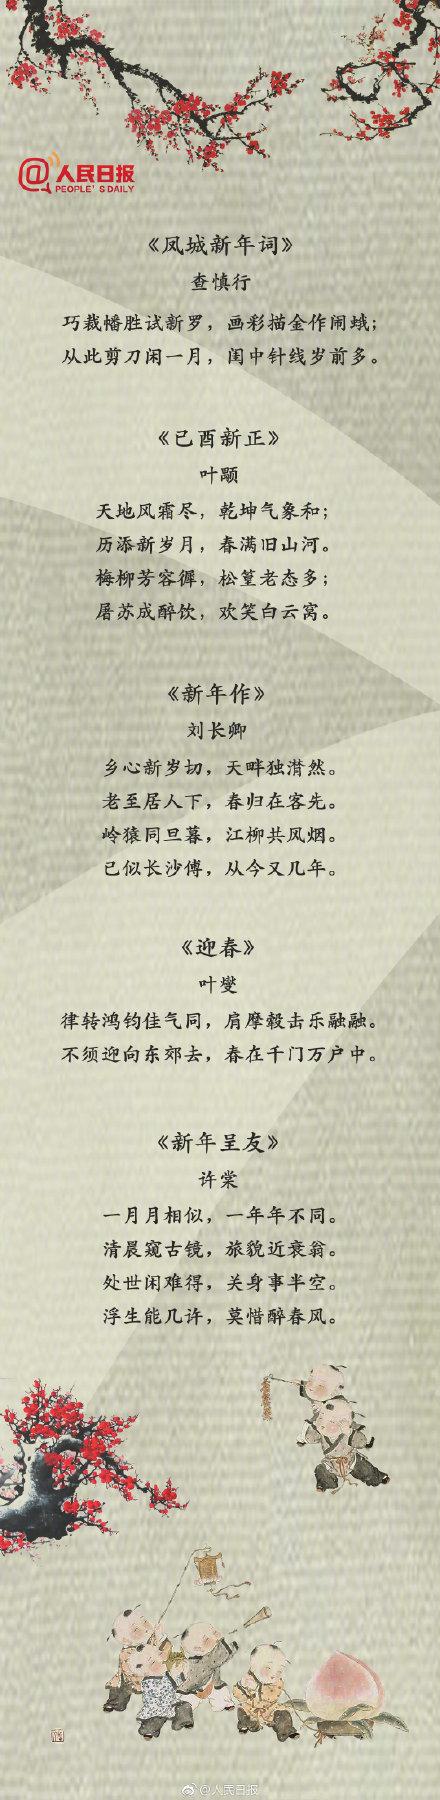 春节的古诗